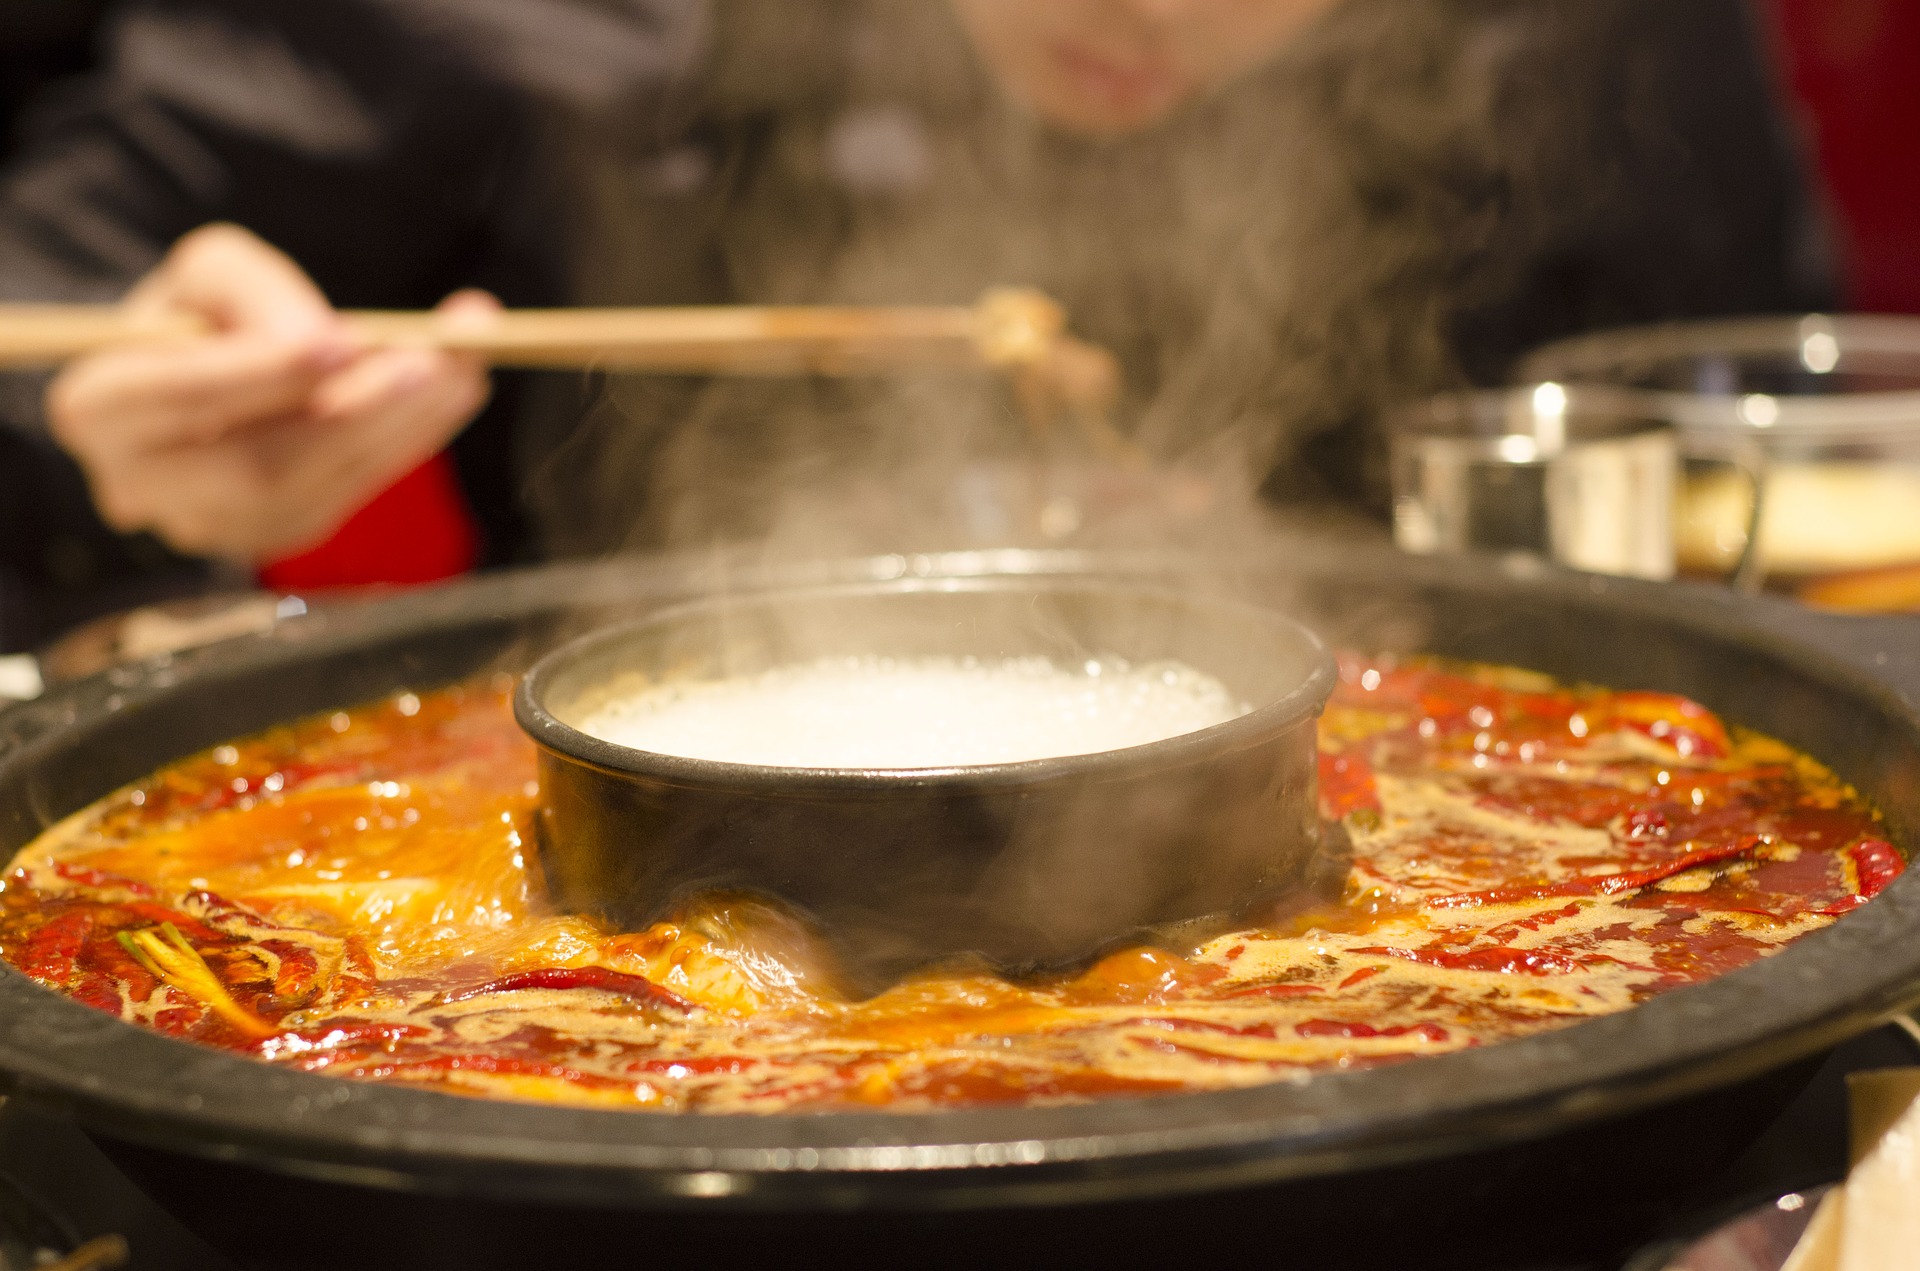 China Restaurant Syndrom - Wie gefährlich ist Glutamat wirklich?